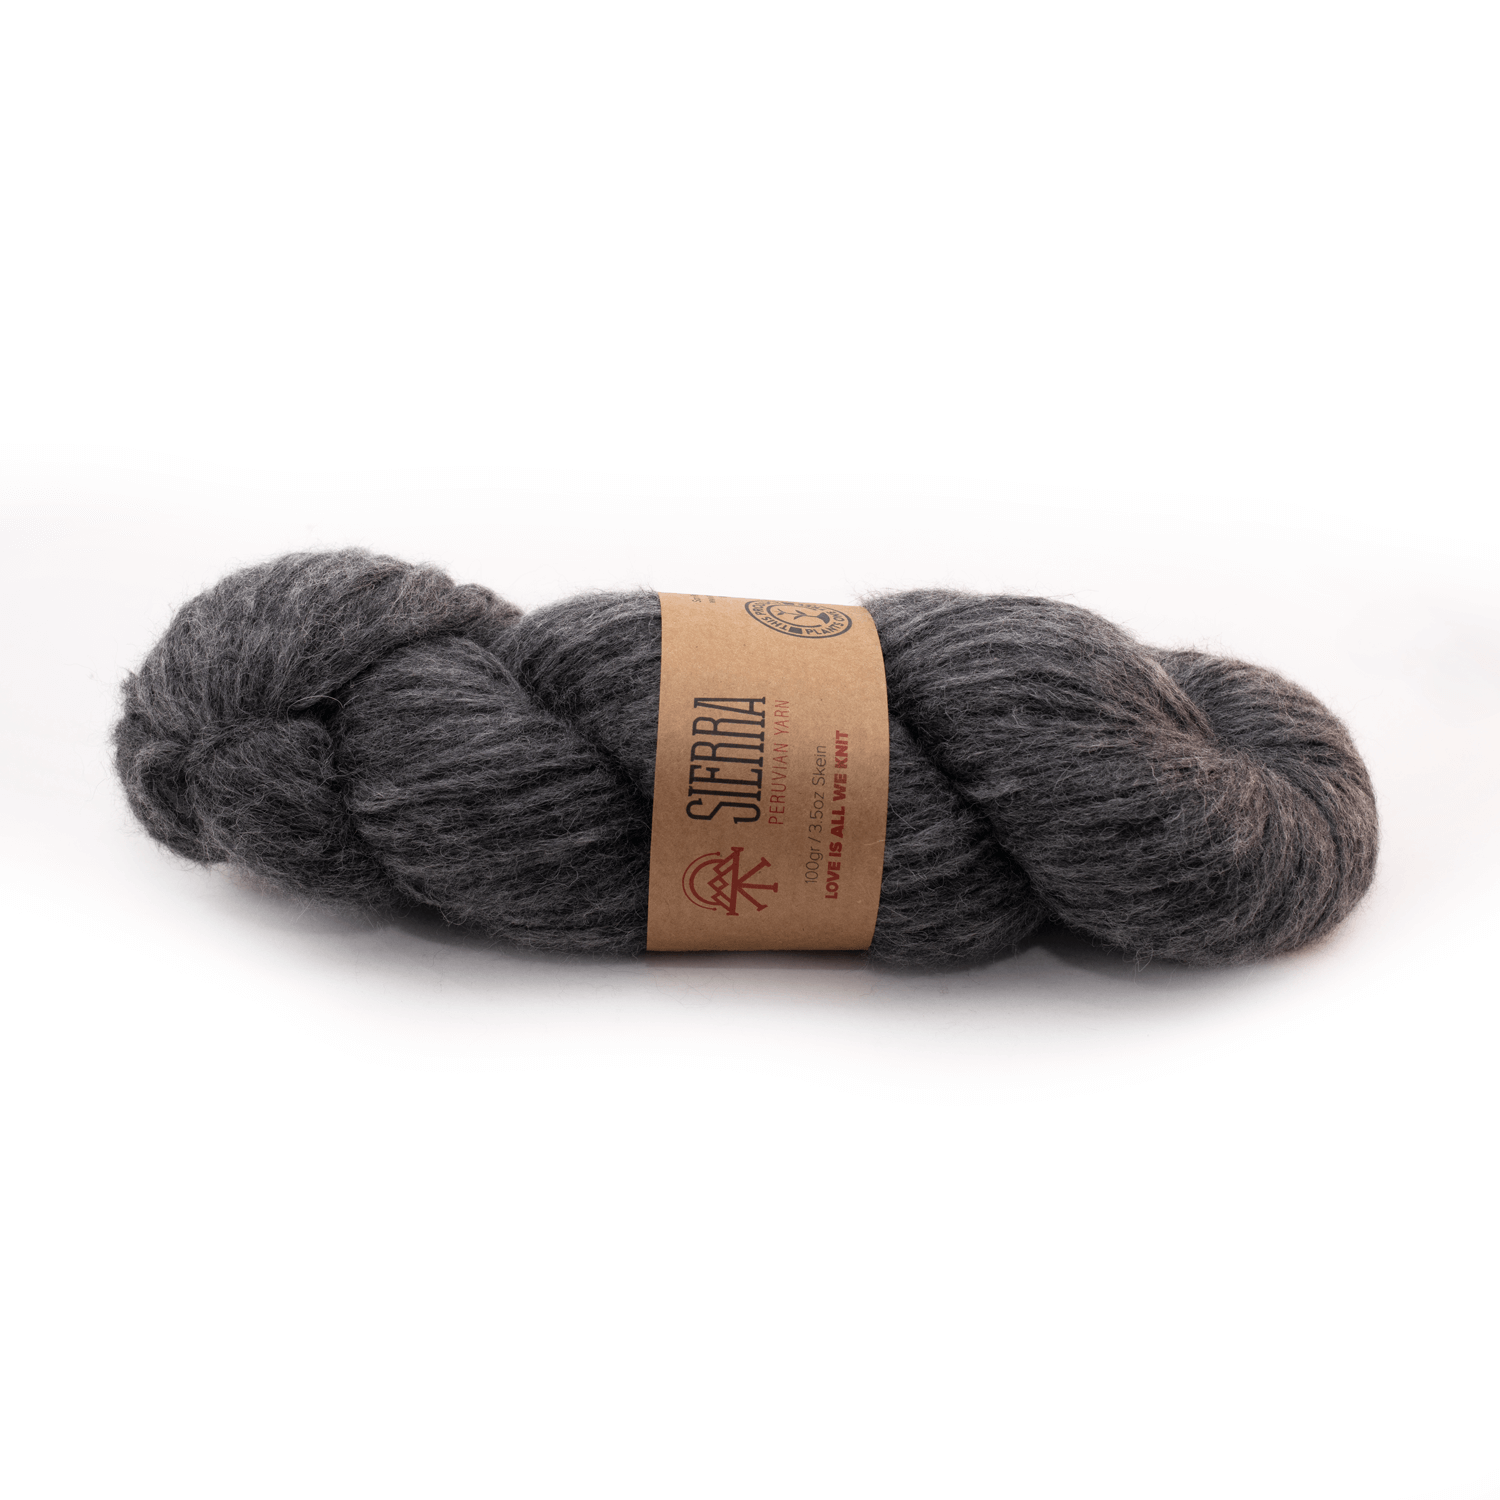 Alpaca Dark Grey Light pullover Knitting Kit